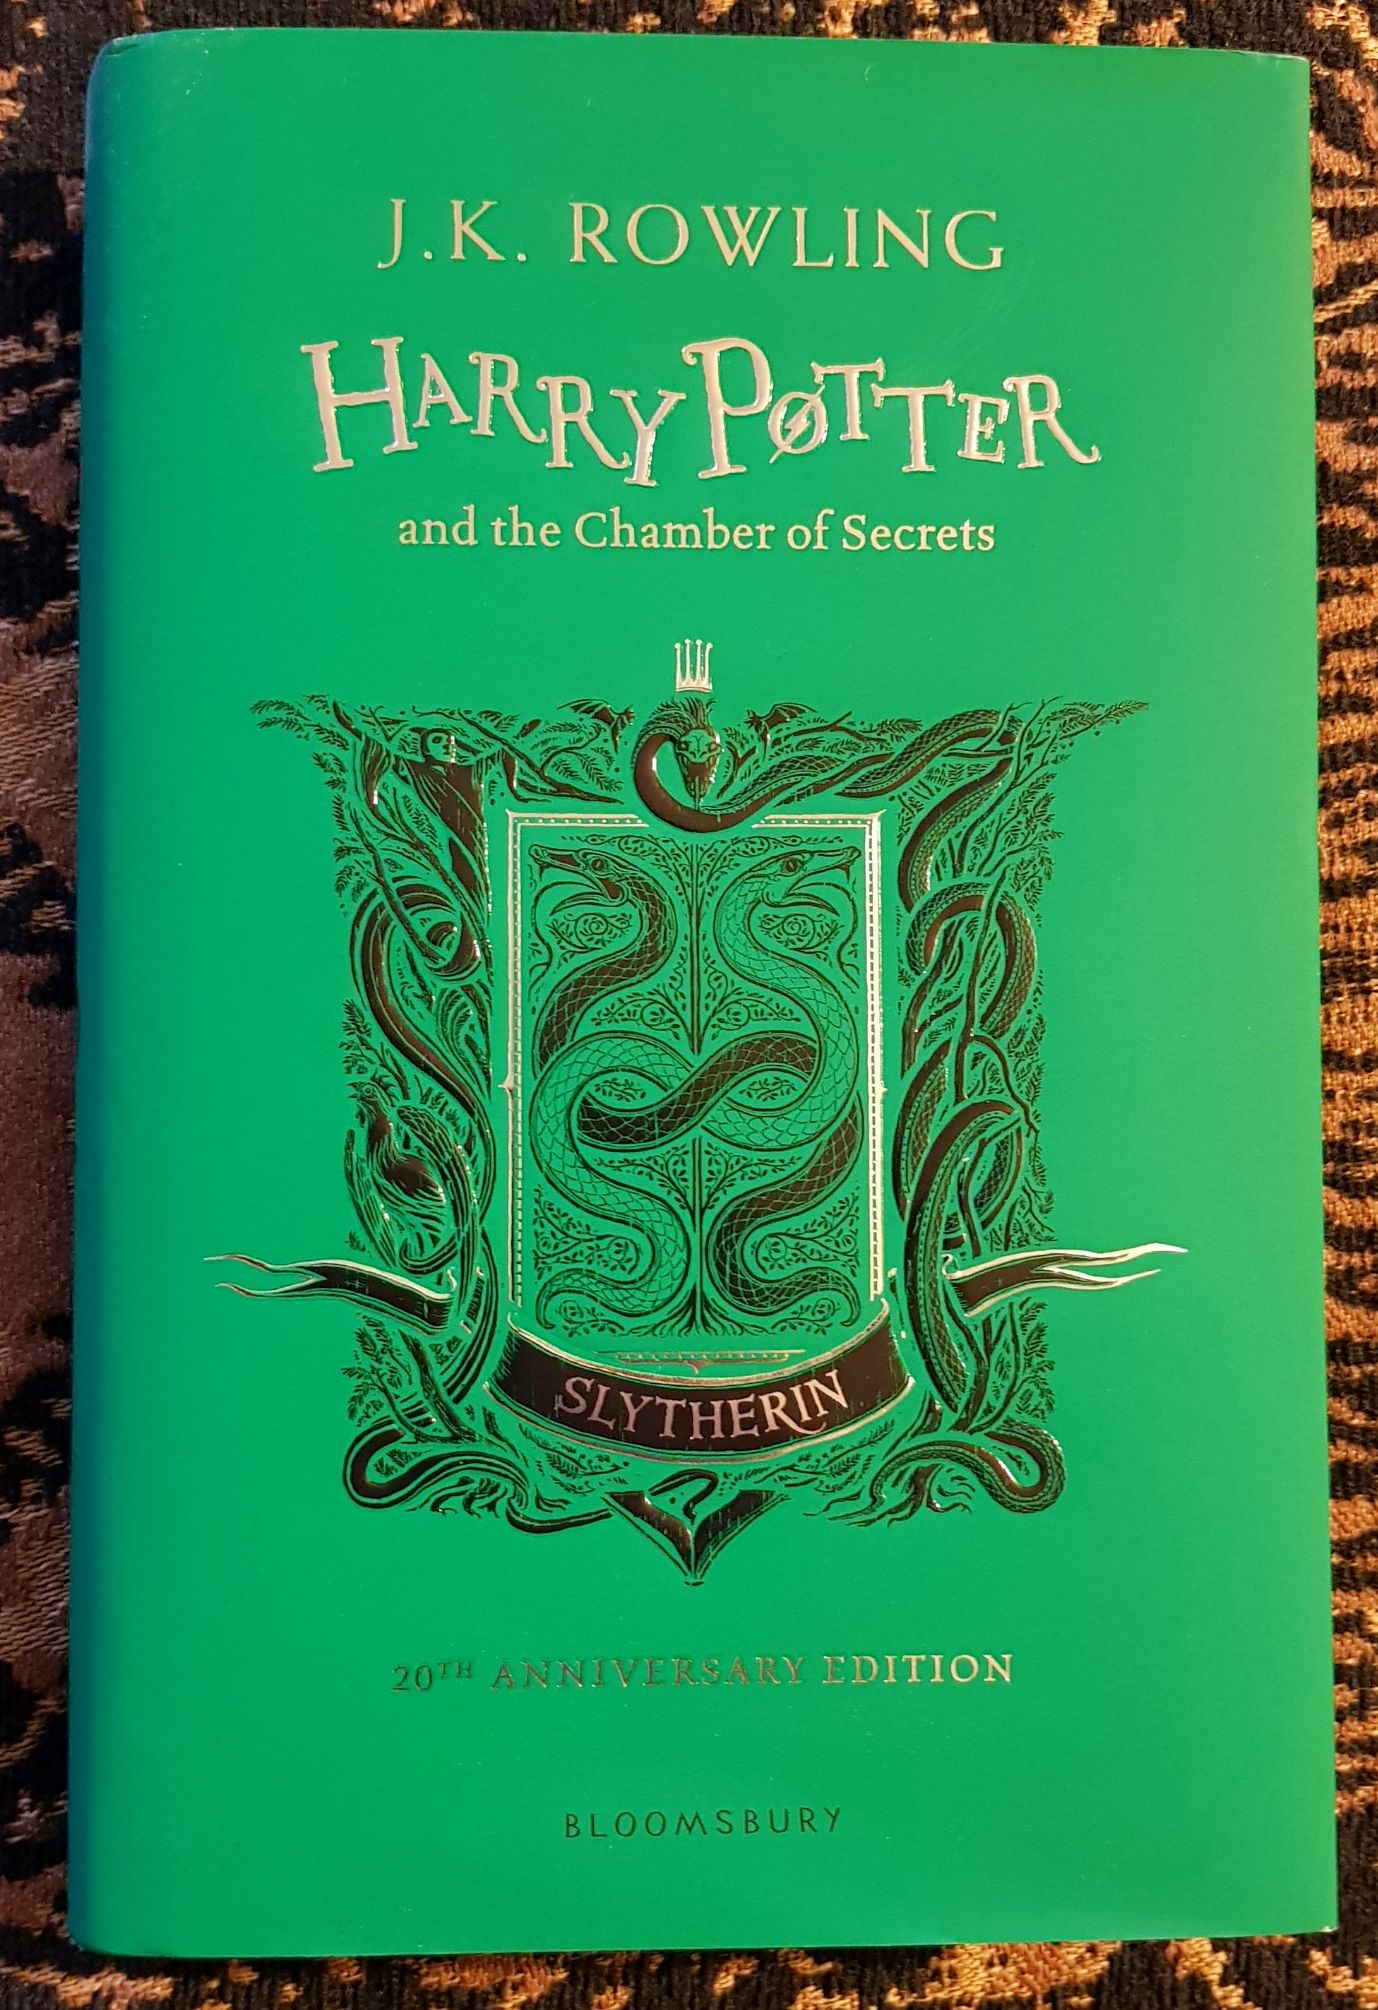 Libro: Harry Potter Y La Cámara Secreta (Edición Slytherin del 20° Aniversario) por J. K. Rowling